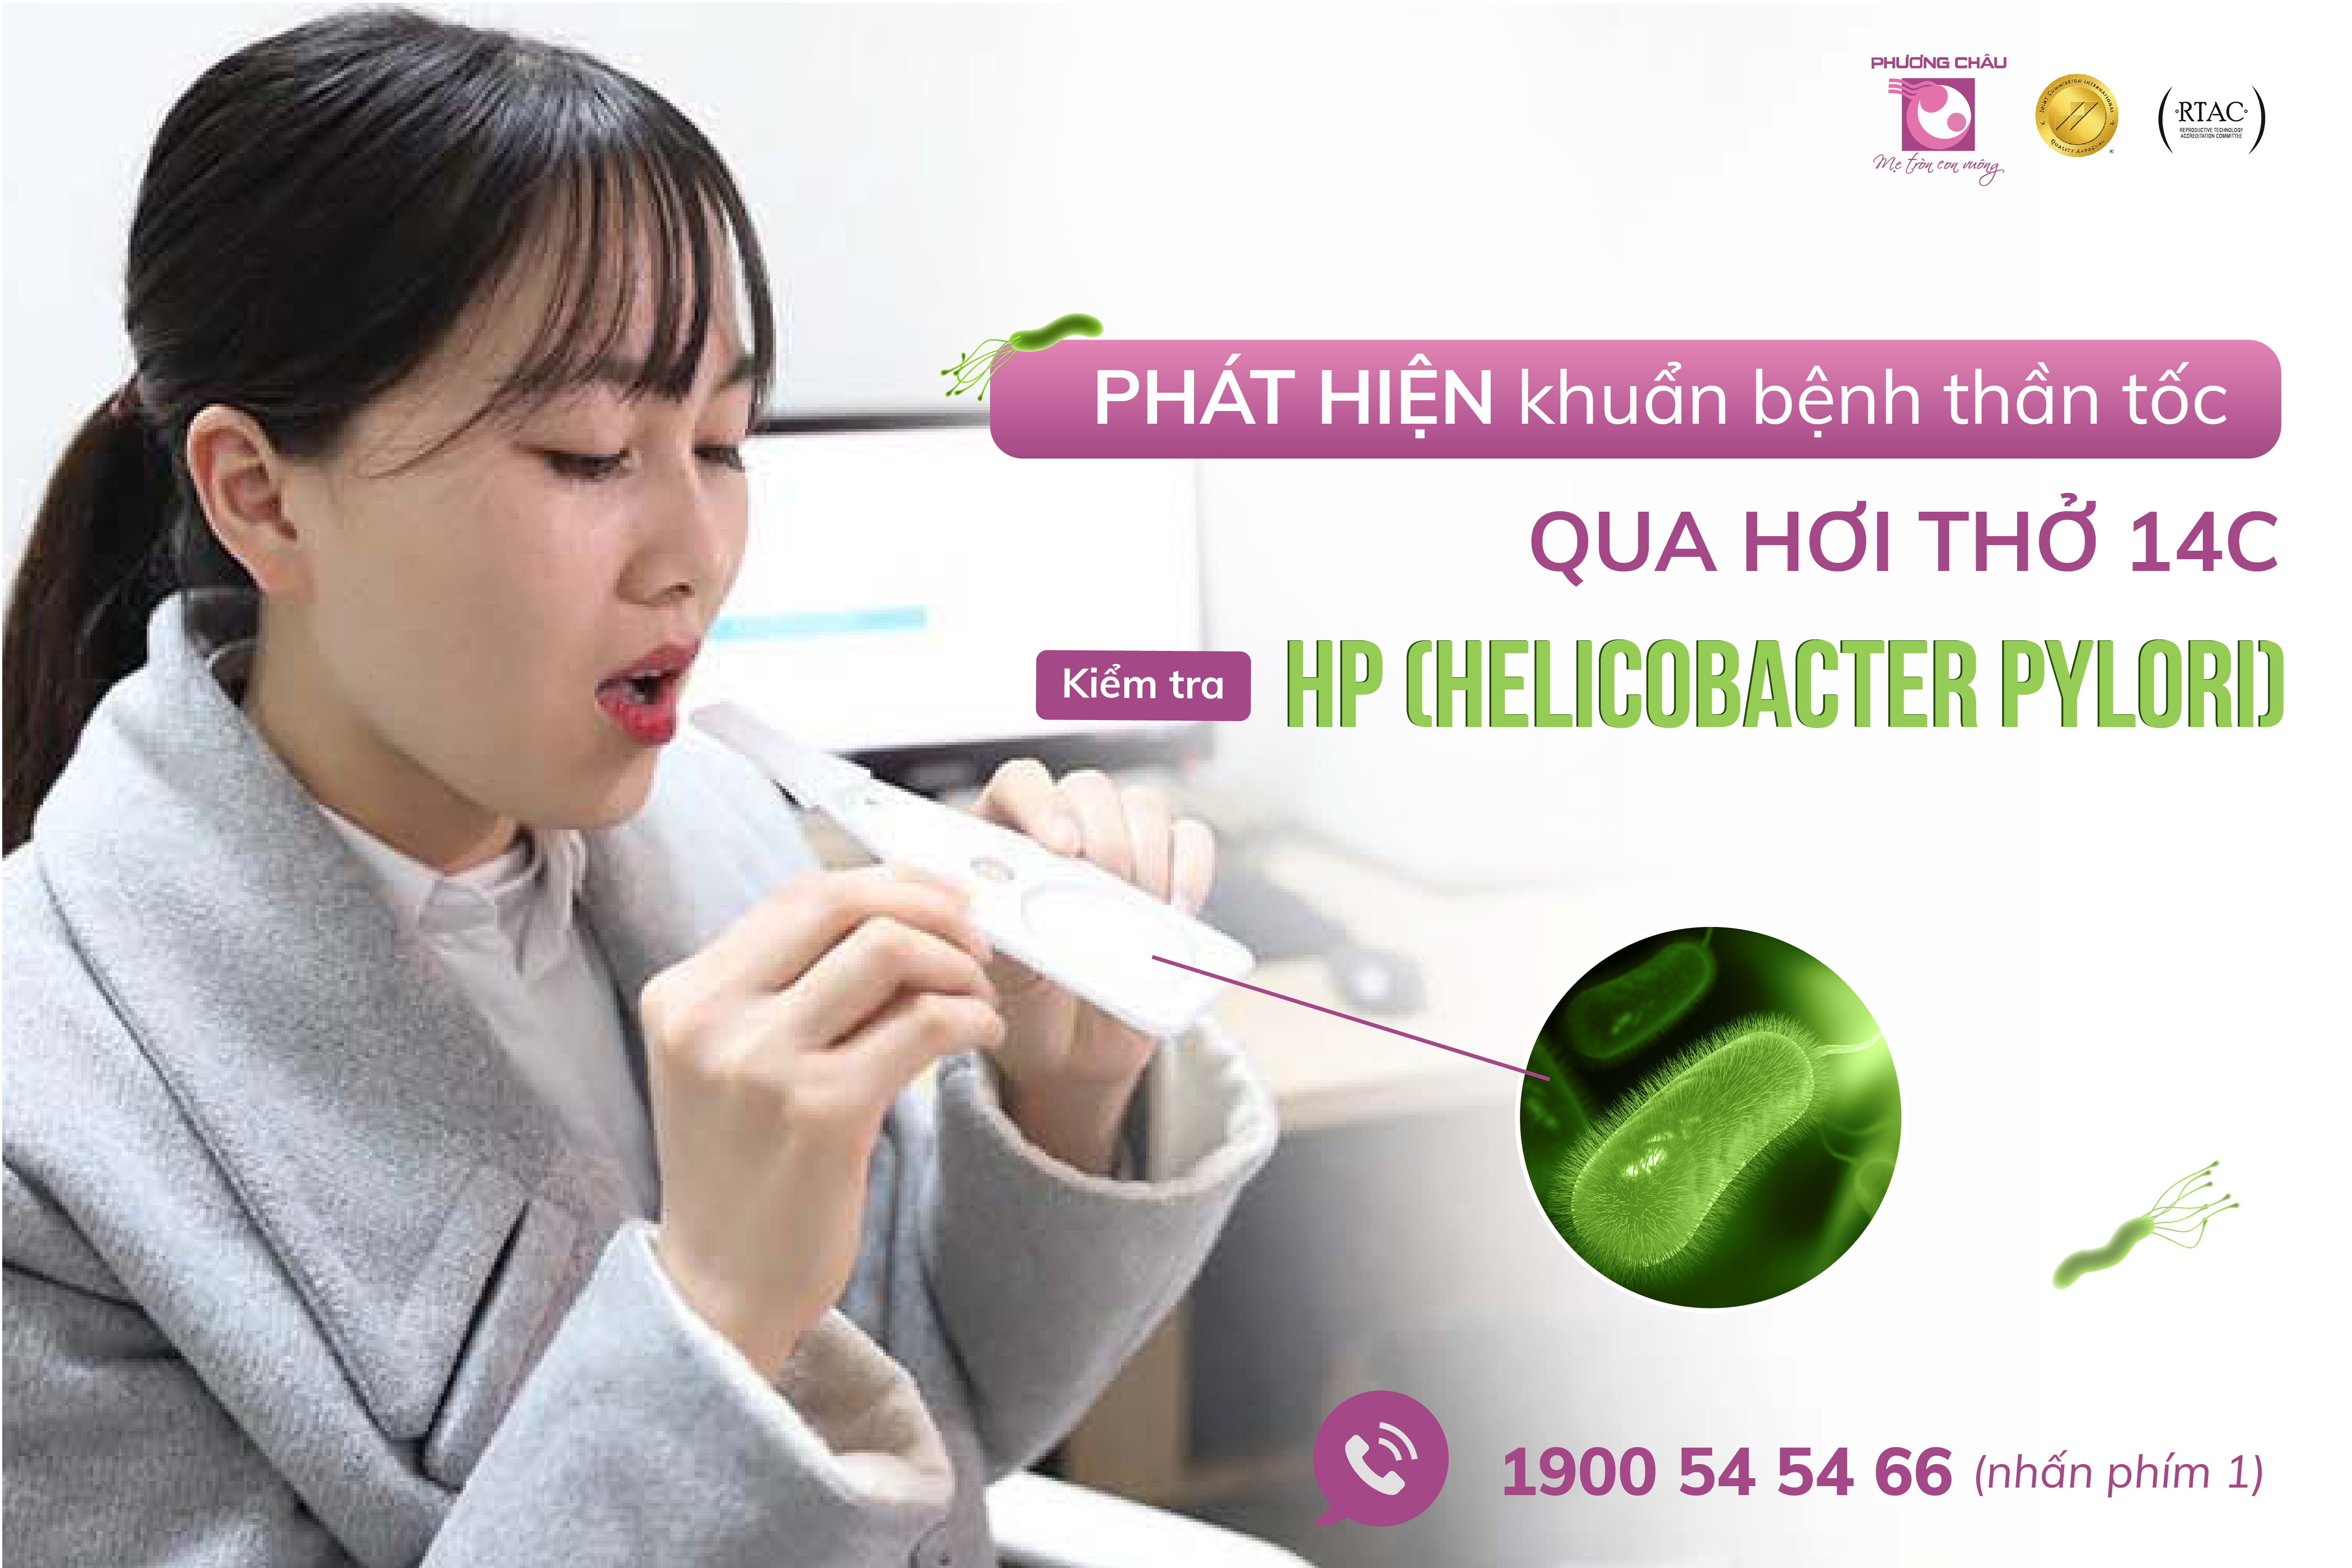 Hiện nay tại Phương Châu, bạn có thể truy tìm khuẩn bệnh HP nhanh chóng, nhẹ nhàng, không đau và tiết kiệm chi phí bằng dịch vụ TEST HP QUA HƠI THỞ 14C.